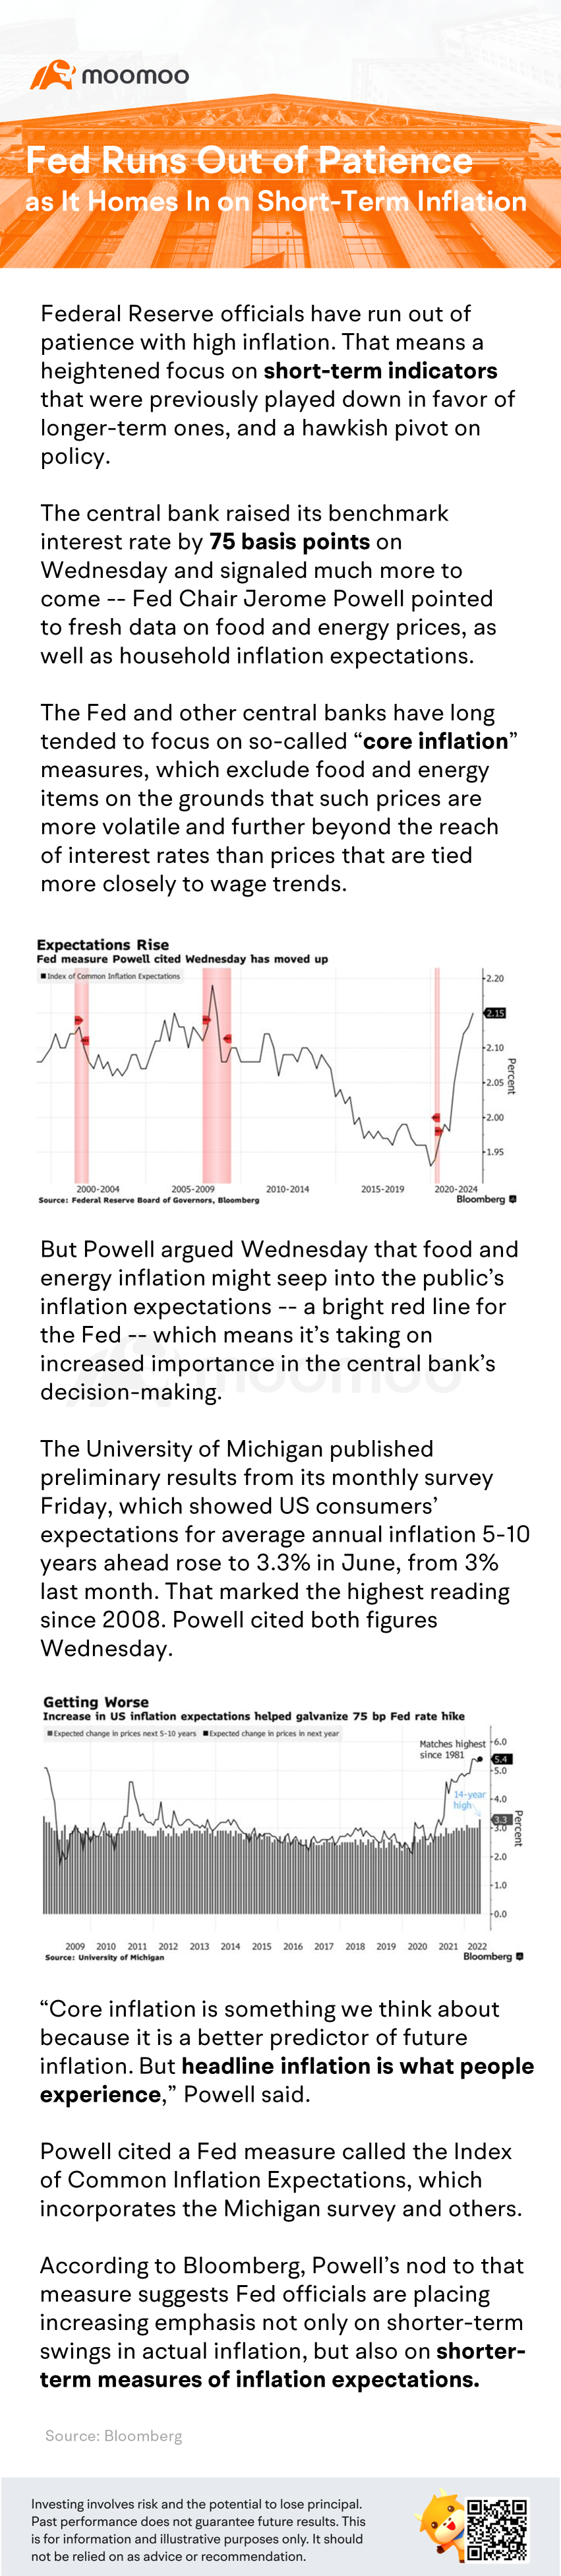 美联储在应对短期通货膨胀时已经没有耐心了